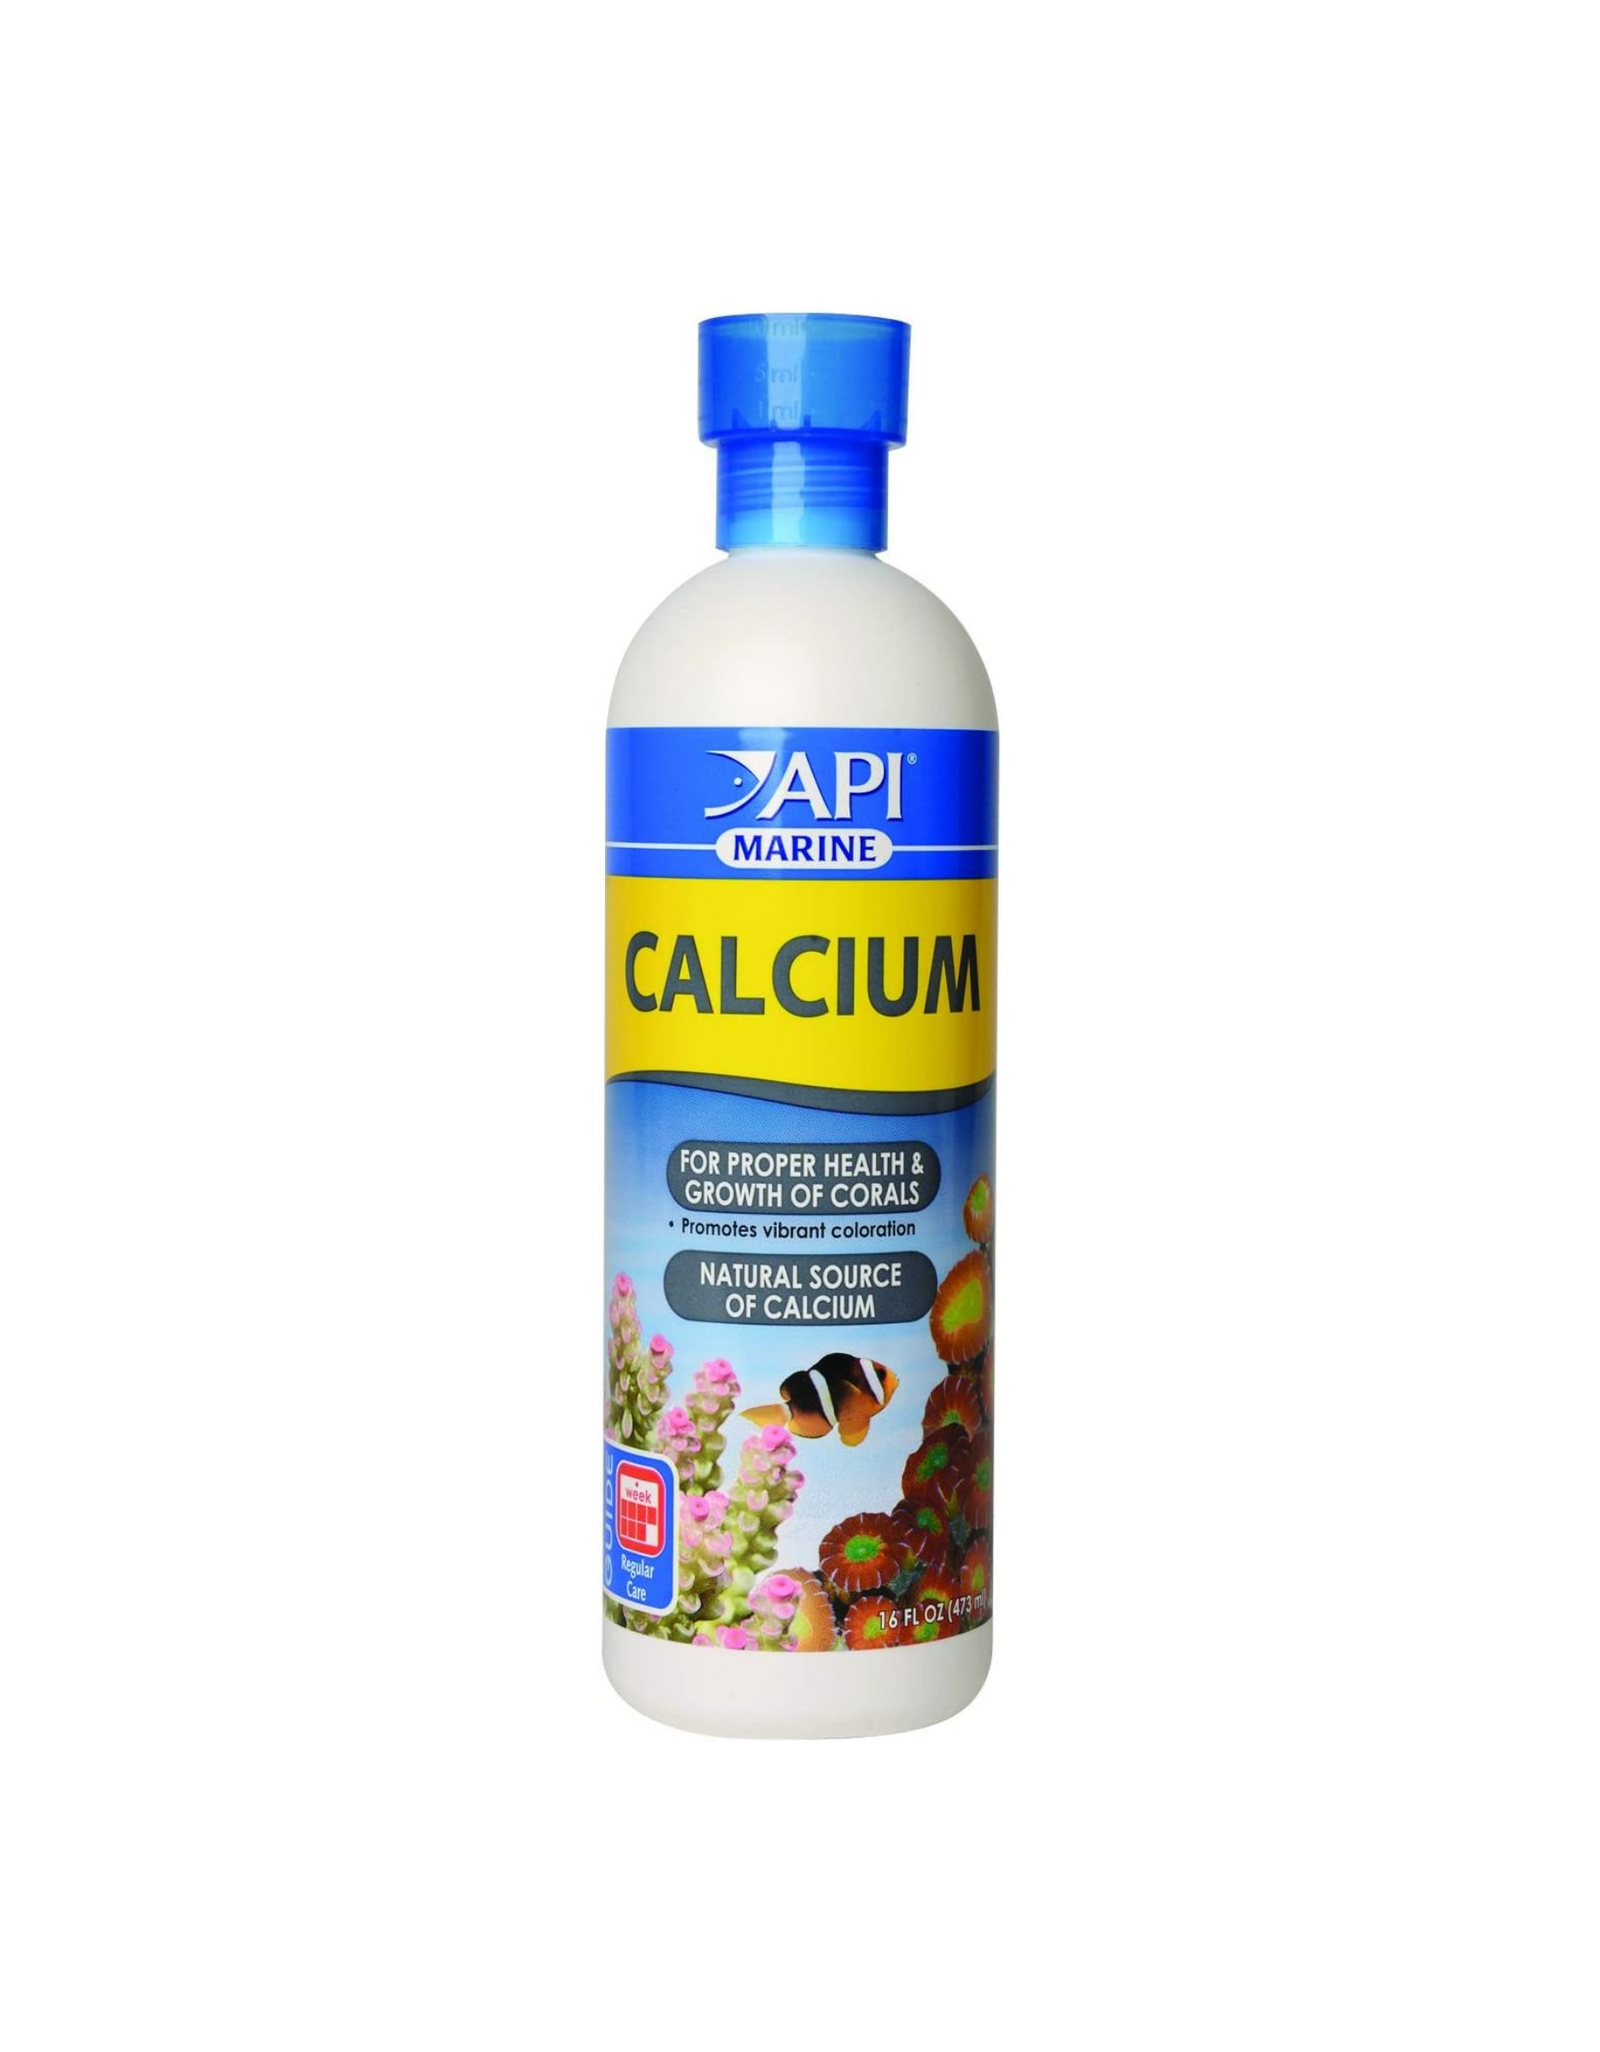 API MARINE CALCIUM, Promotes Vibrant Coloration, 16 oz